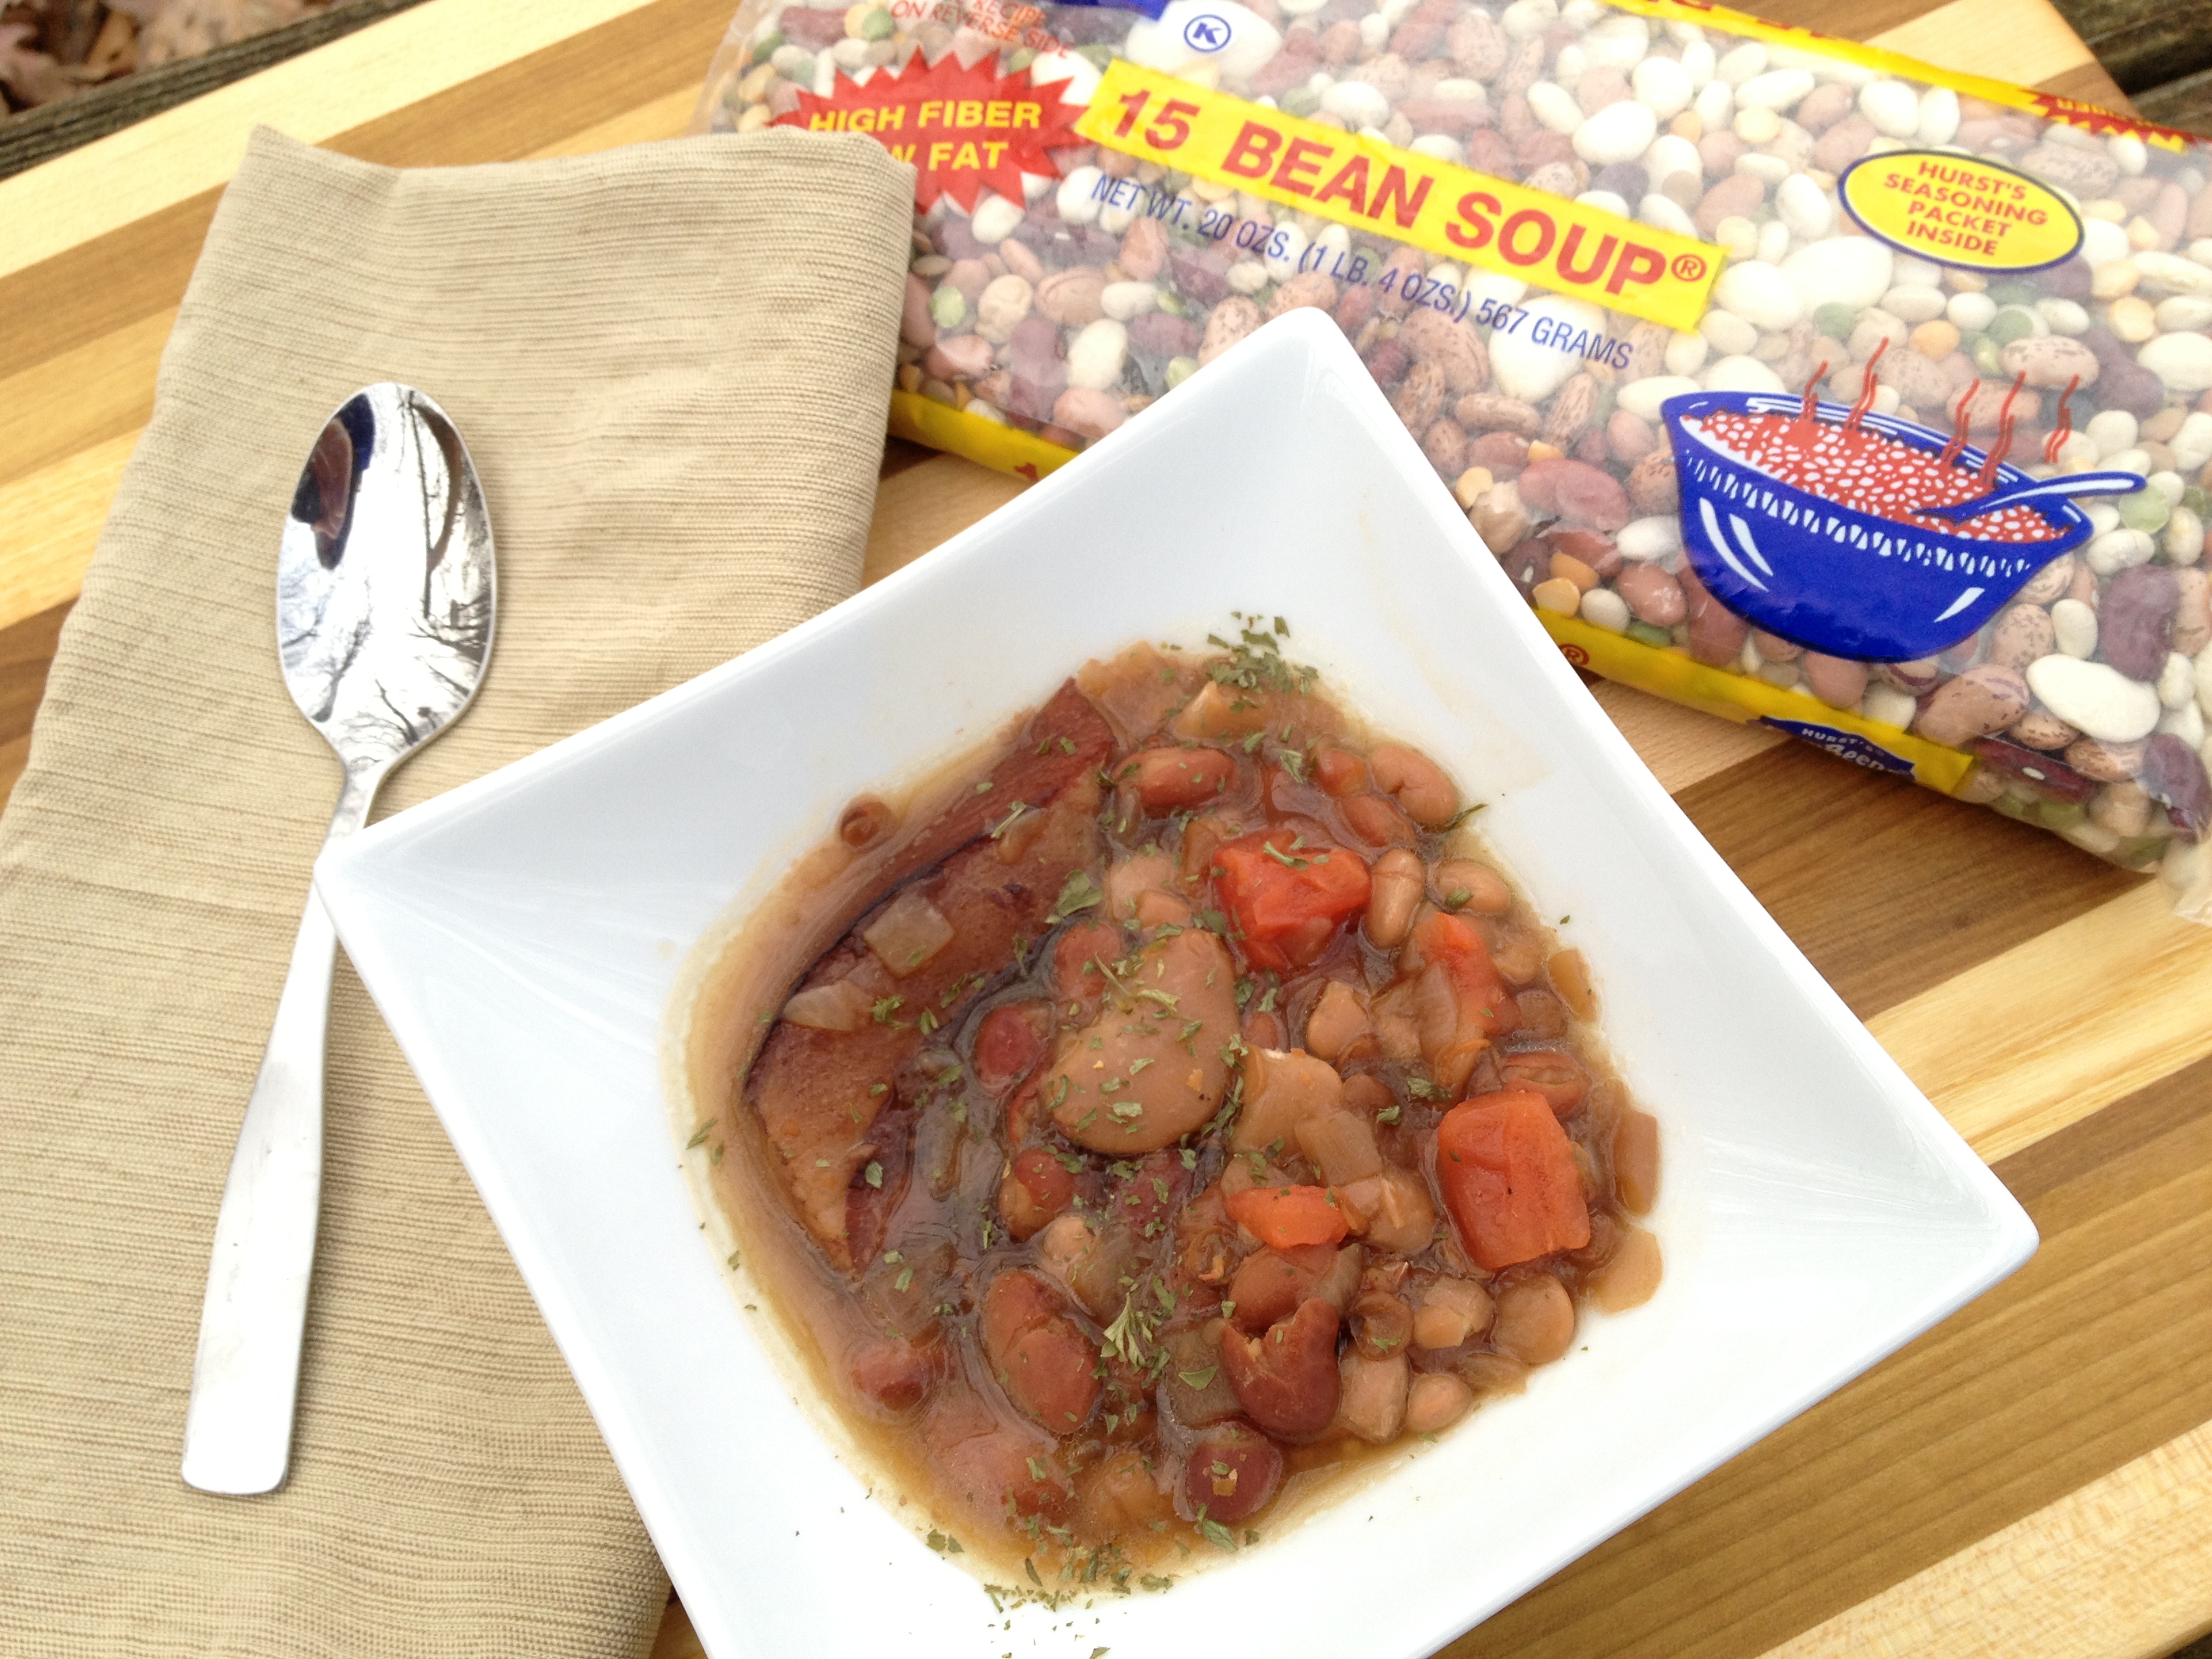 Hurst Beans 15 Bean Soup - Basilmomma